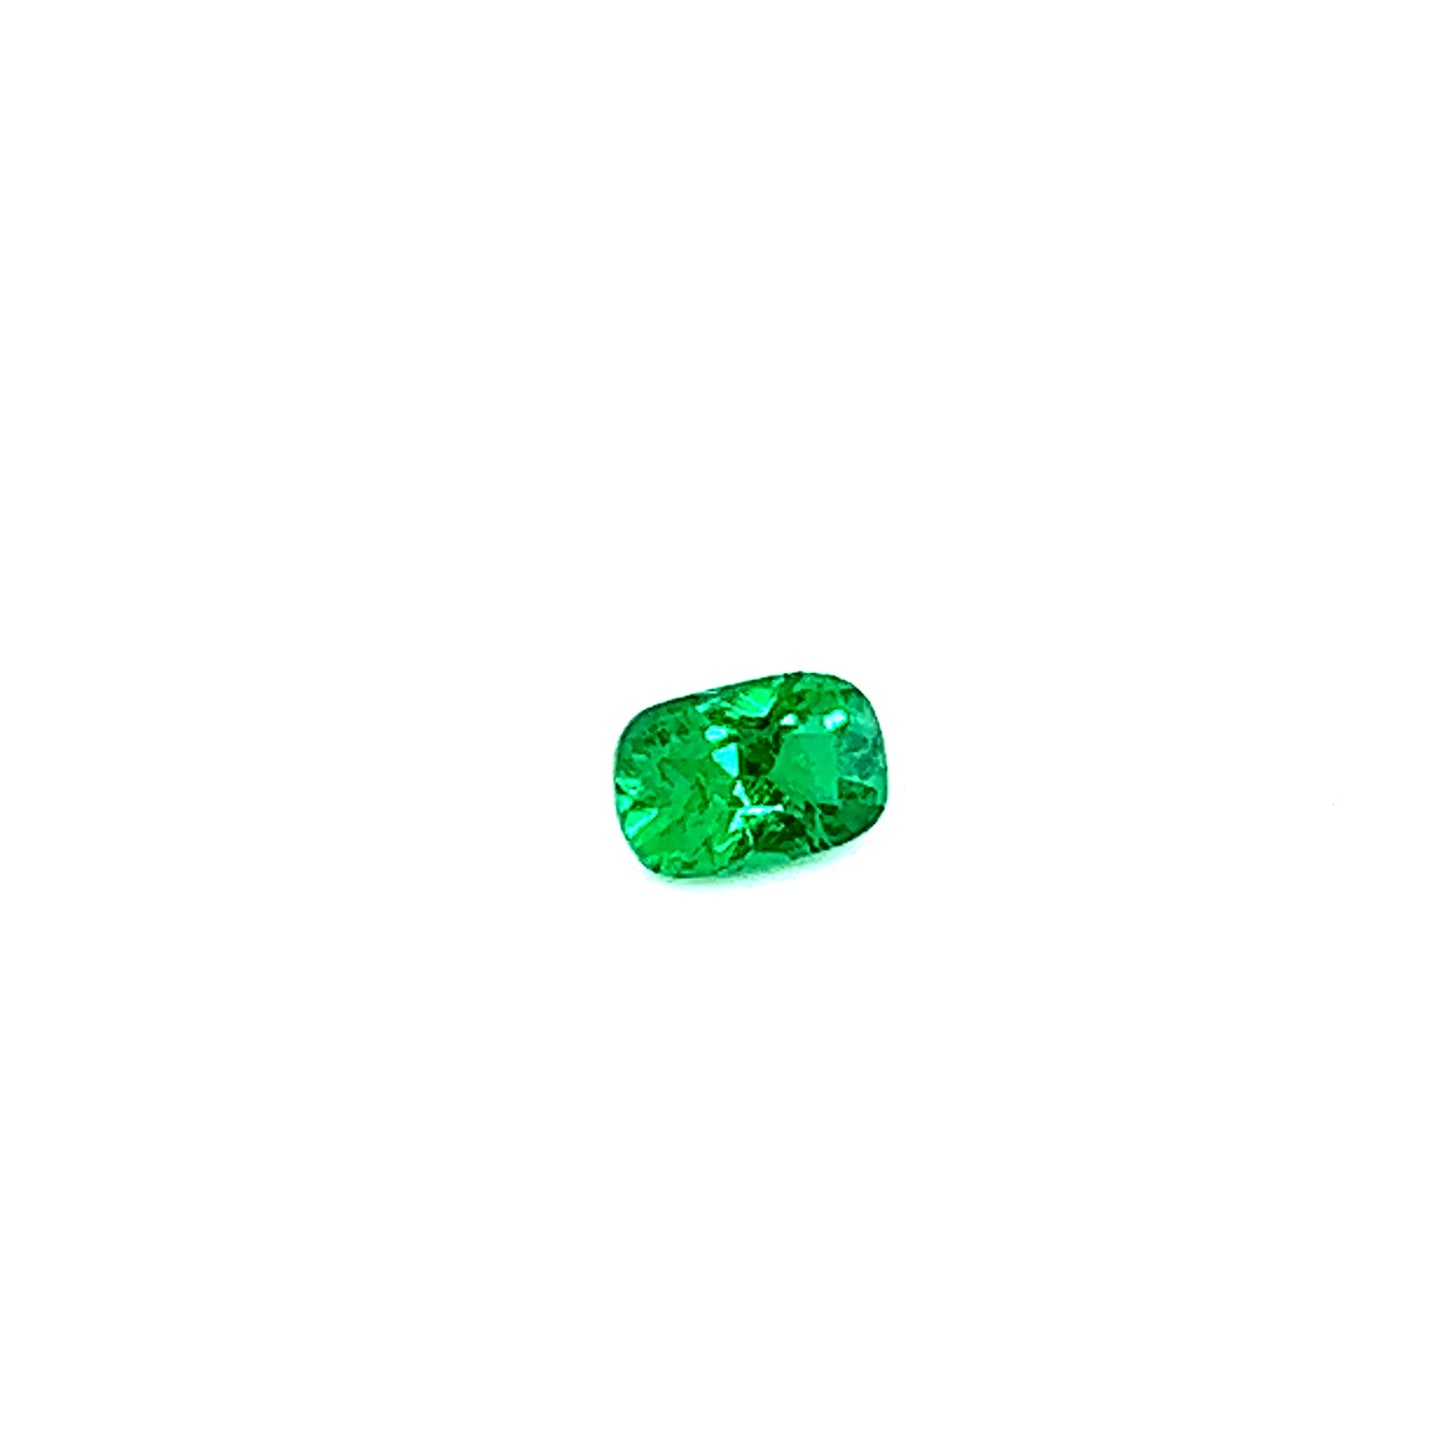 0.43ct Vivid Green Emerald - No Oil